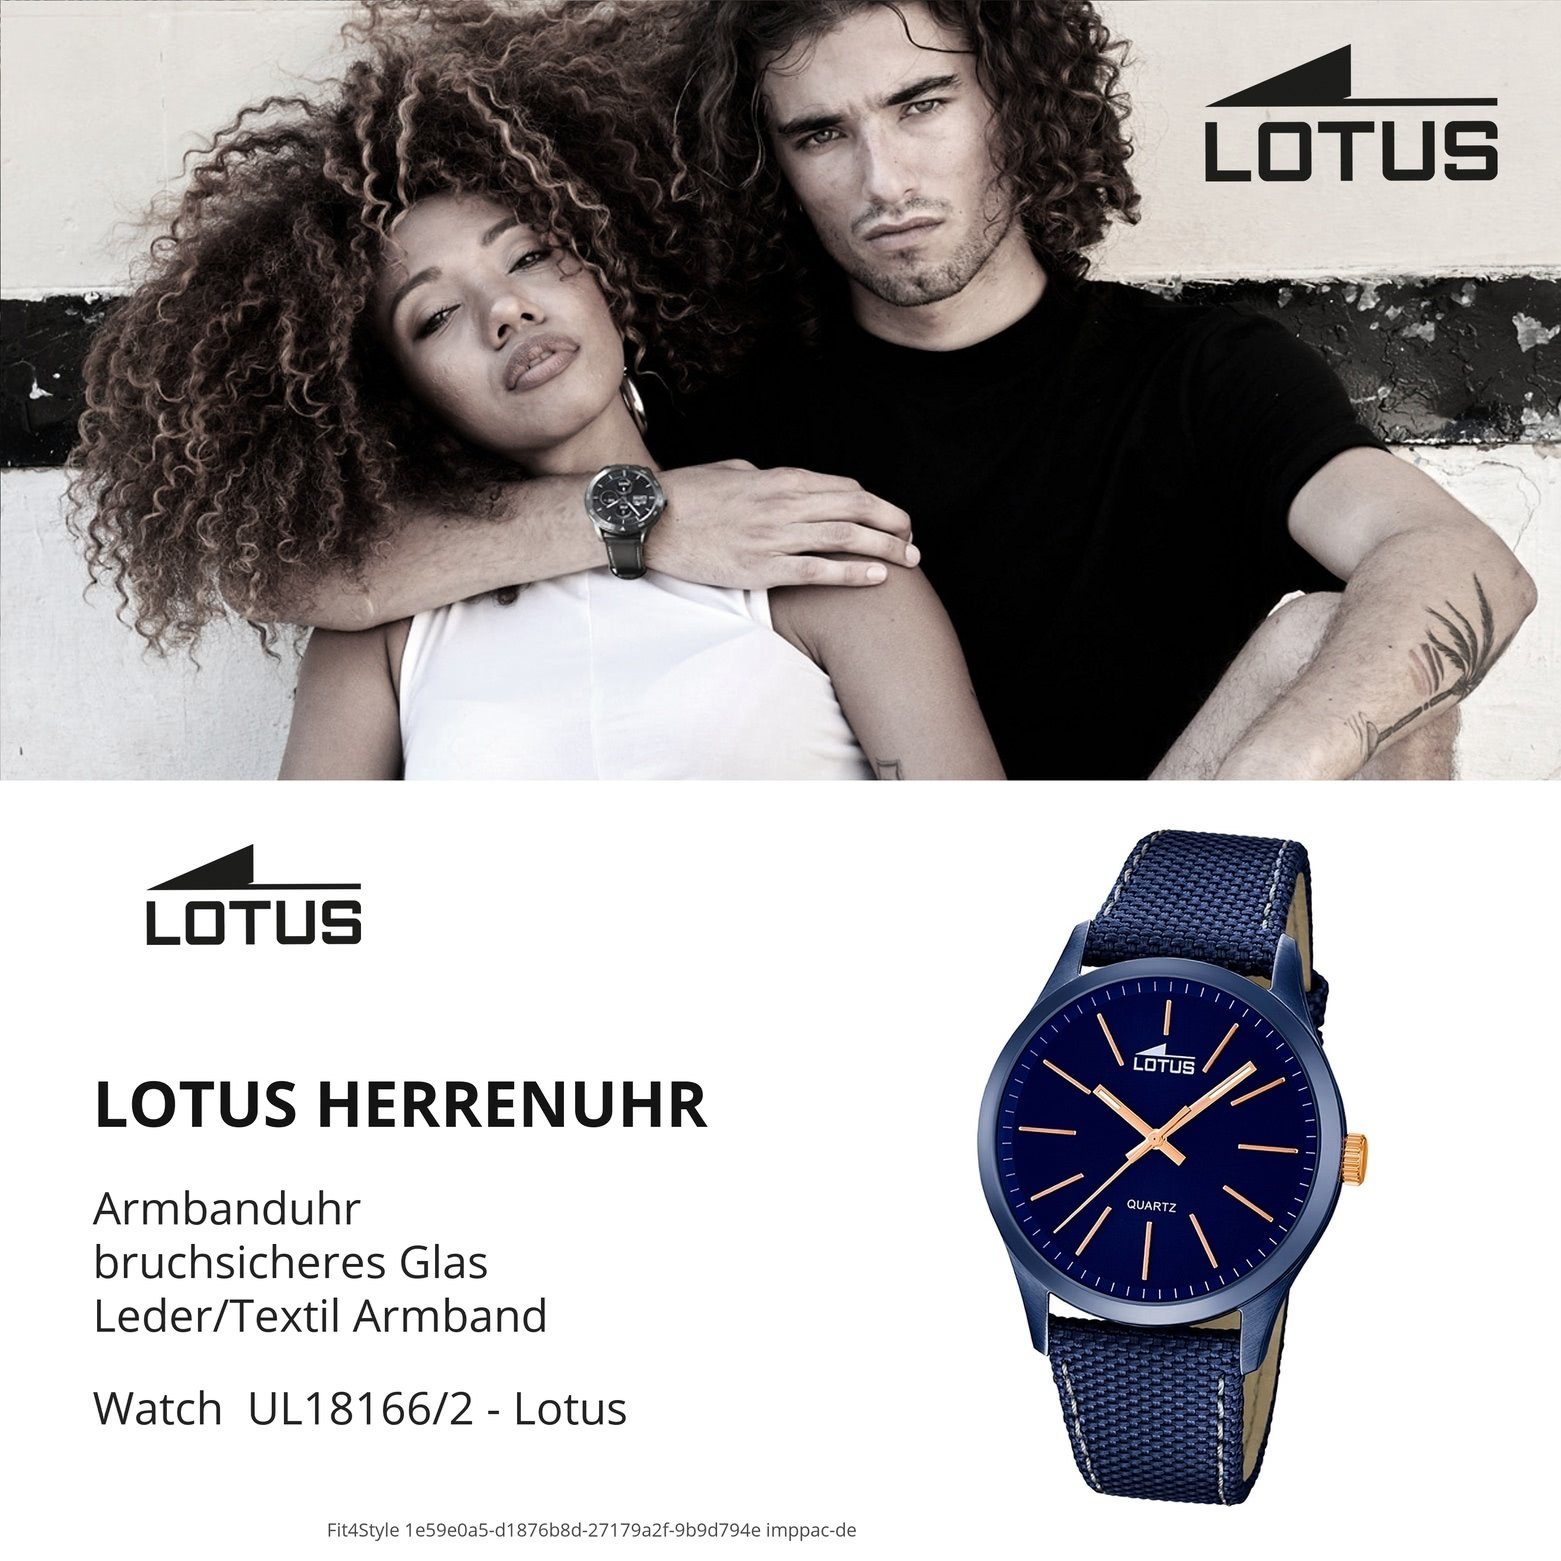 Elegant Herren Leder, Herren Armbanduhr Leder/Textilarmband blau Uhr L18166/2 rund, Quarzuhr Lotus Lotus